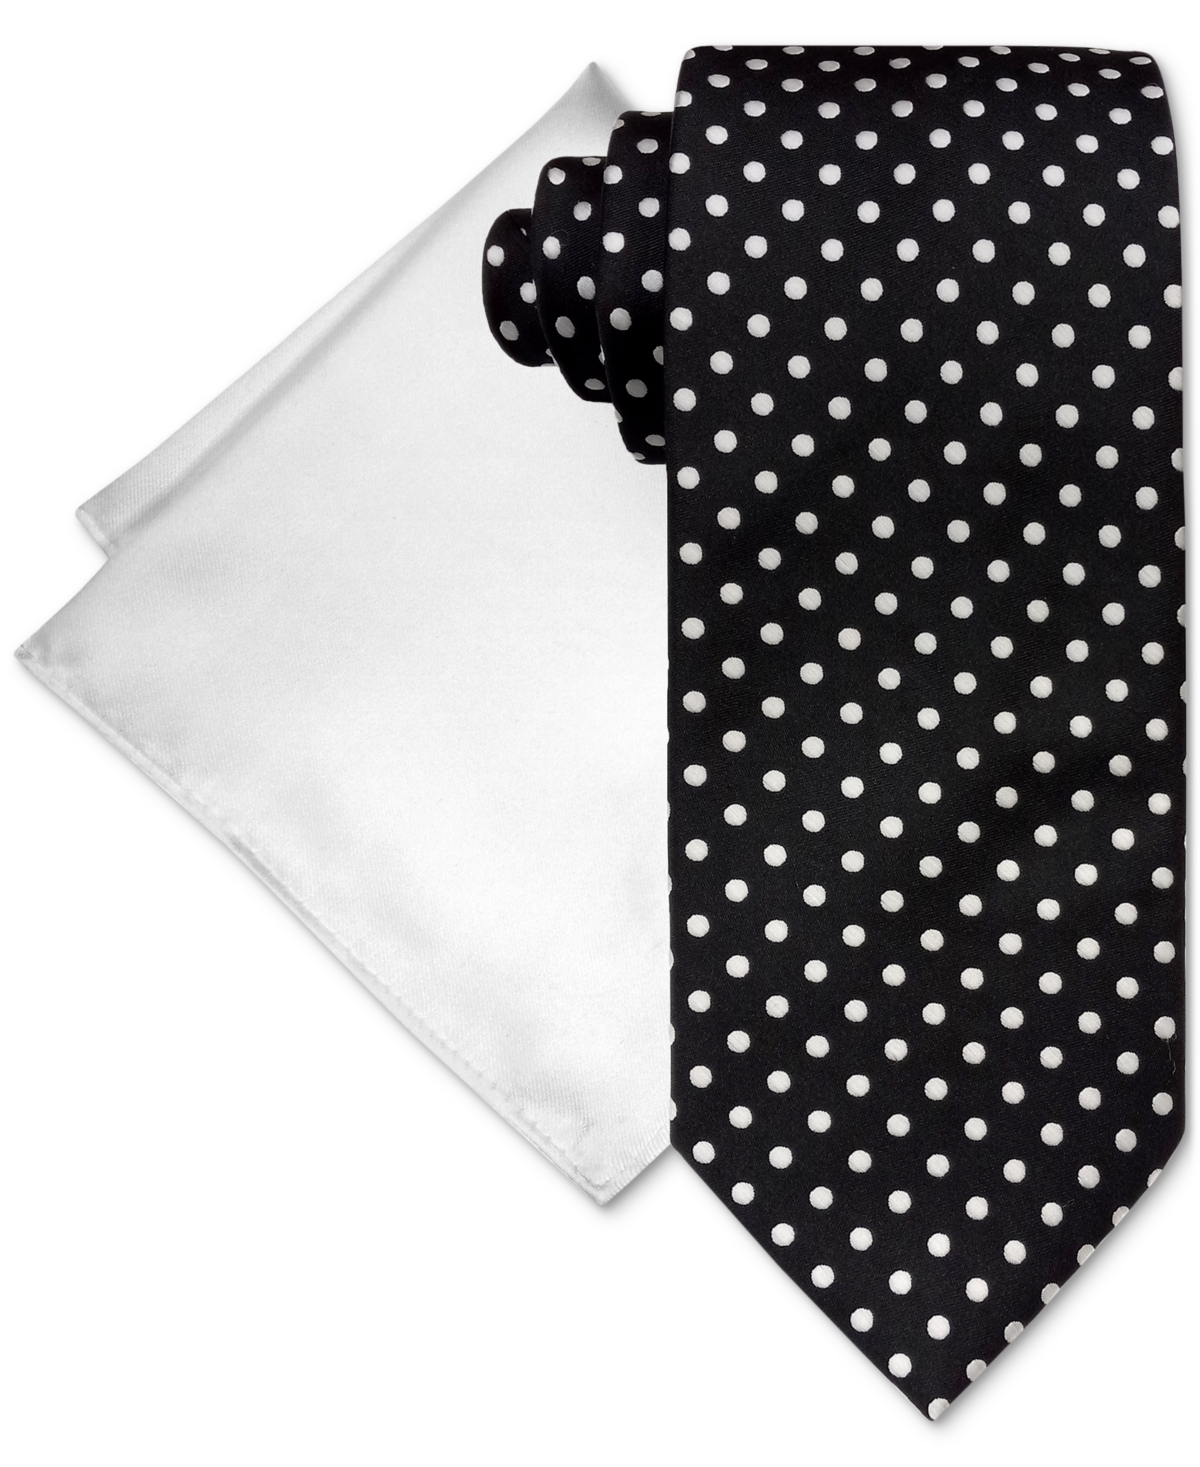 Men's Satin Dot Tie & Pocket Square Set - Black